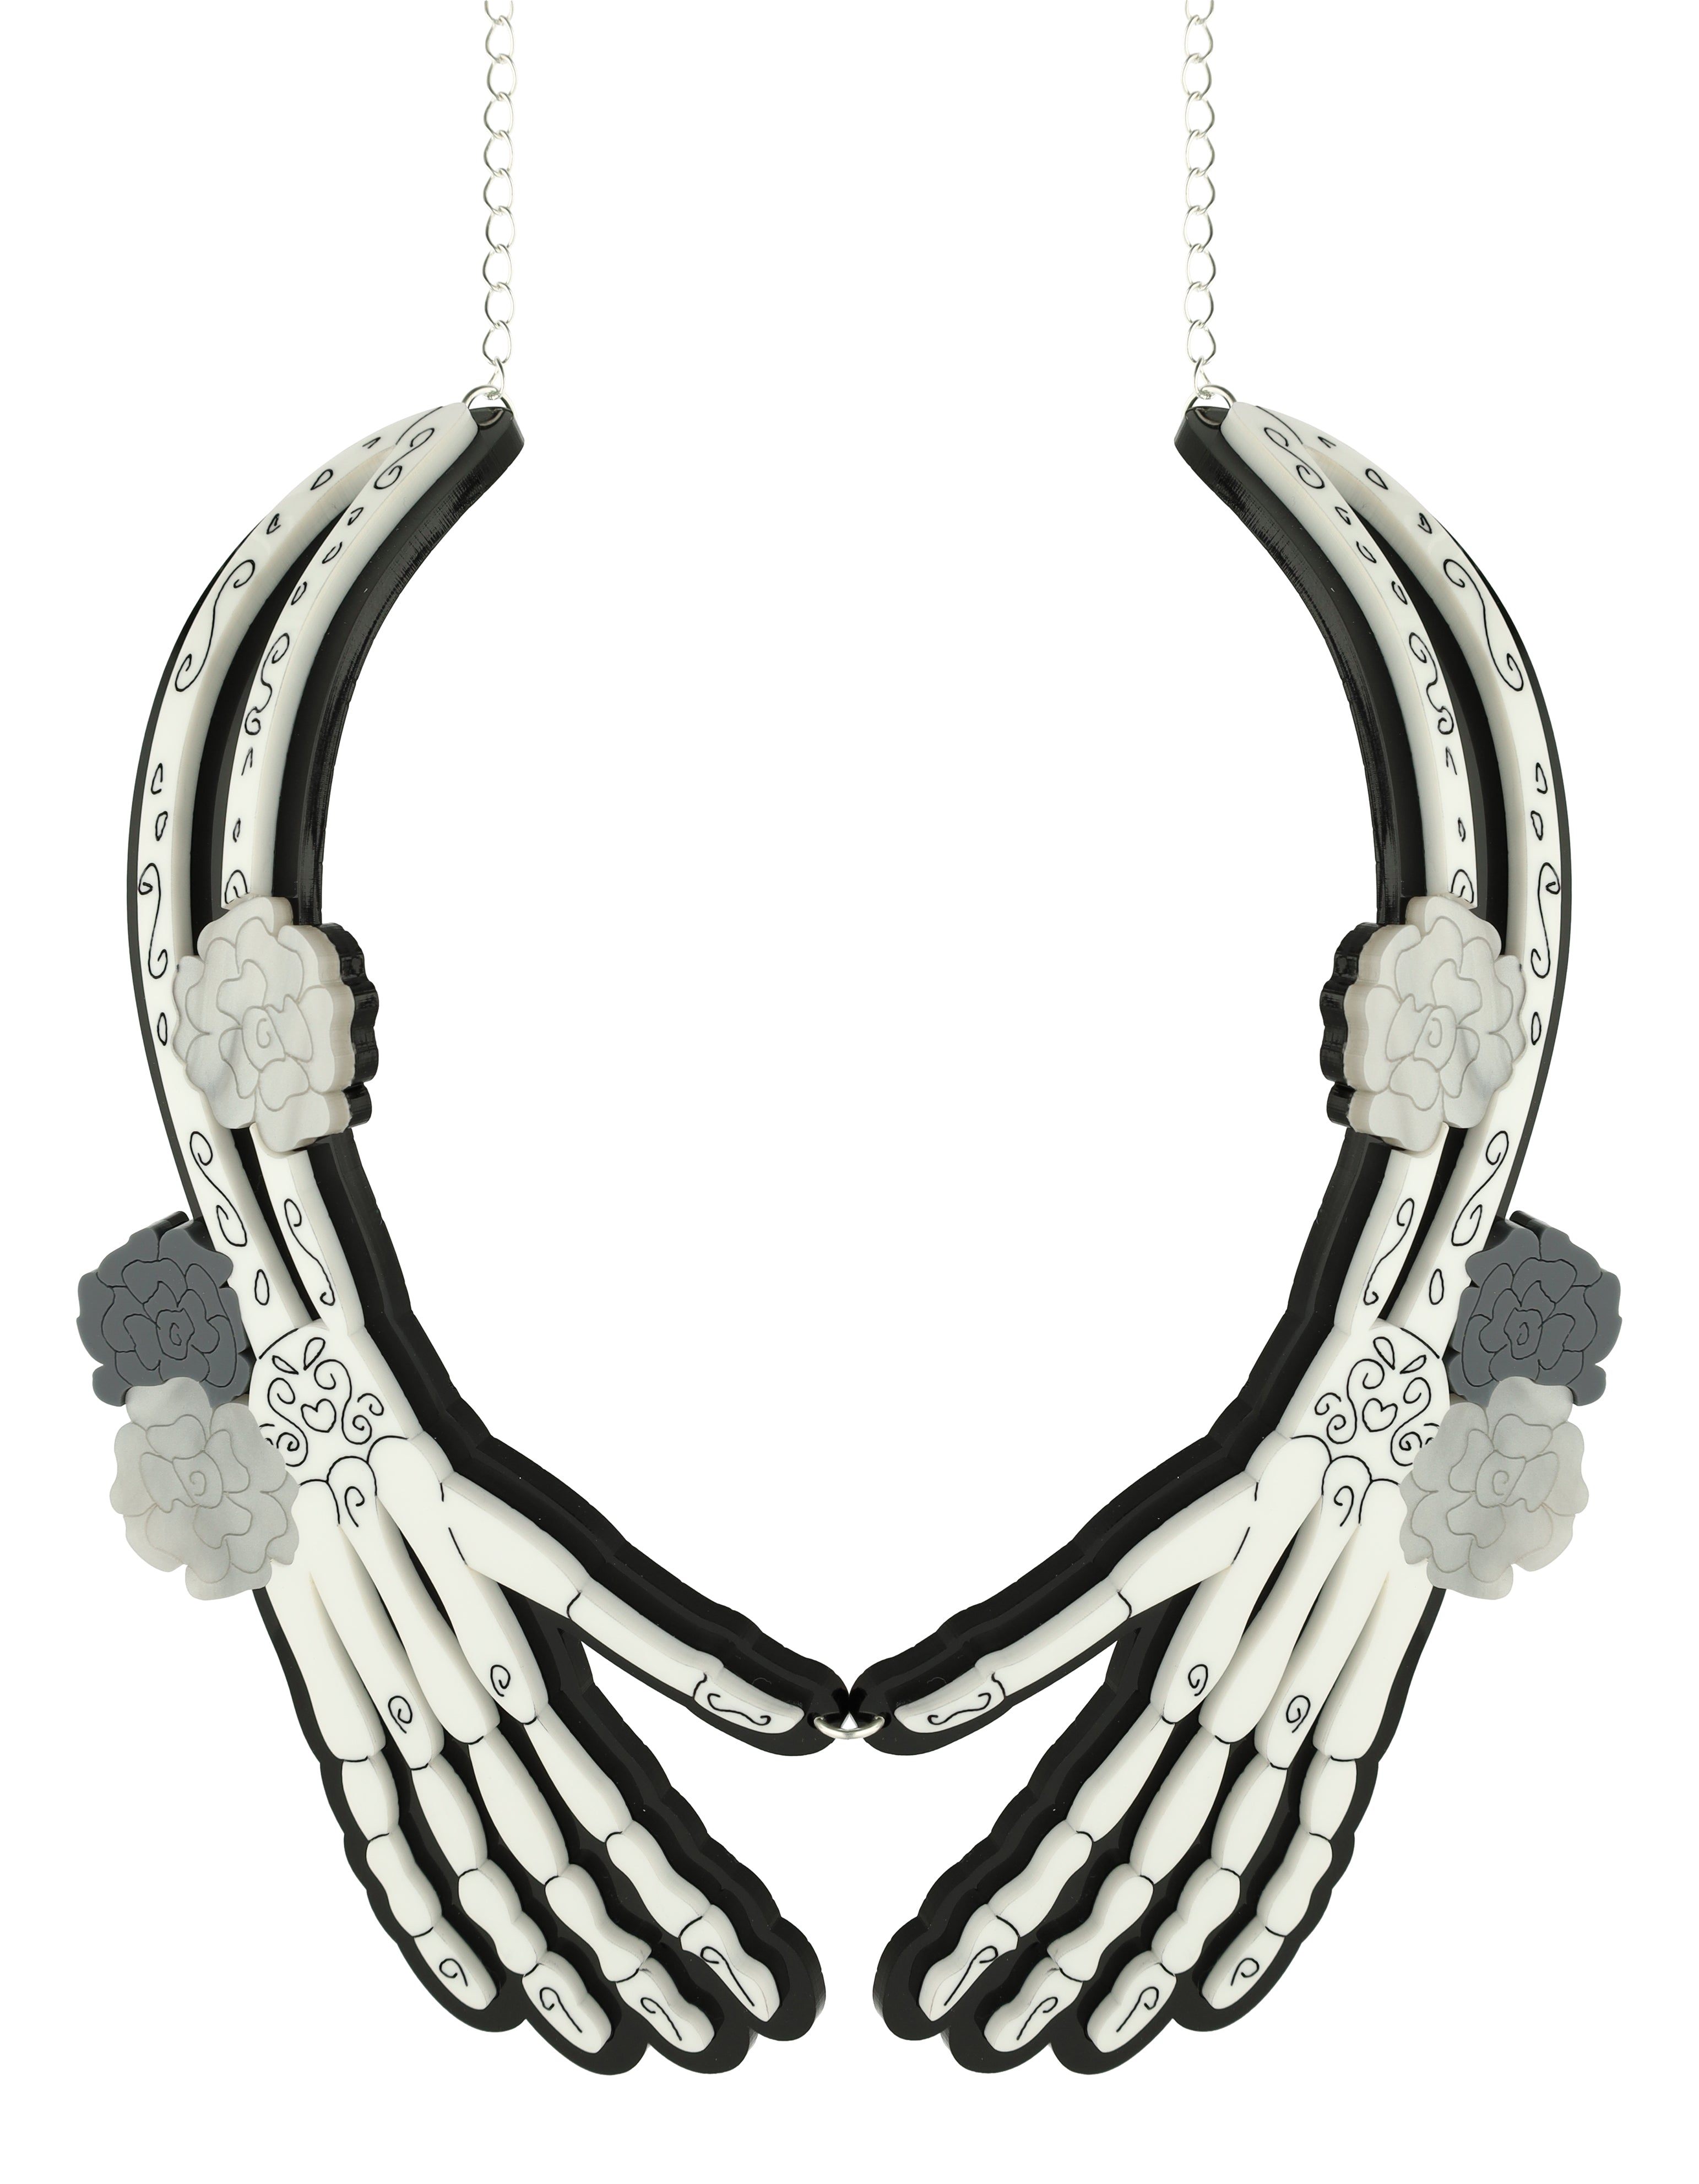 Spooky Skeleton Hands Necklace